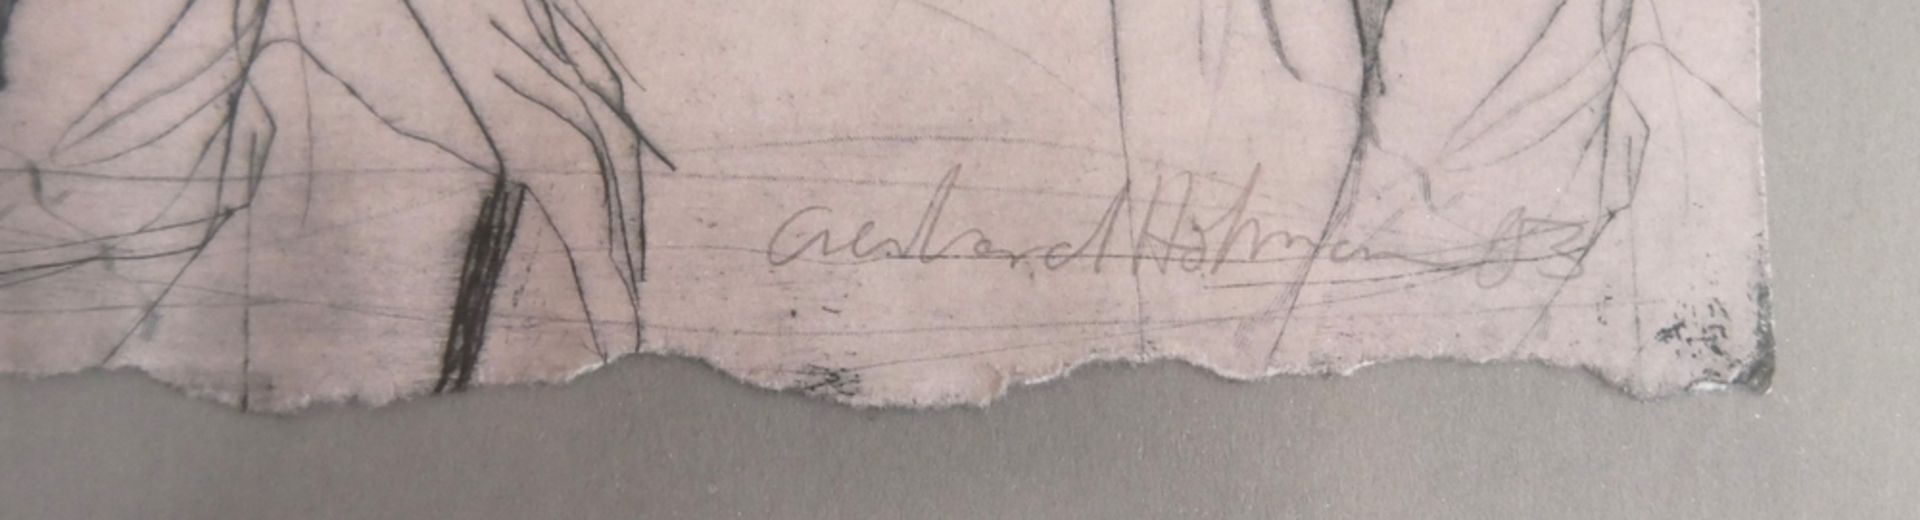 Hofmann. Kaltnadelradierung "2 Damen mit Hut", rechts unten Signiert Hofmann. Blatt 1/30, hinter - Image 2 of 2